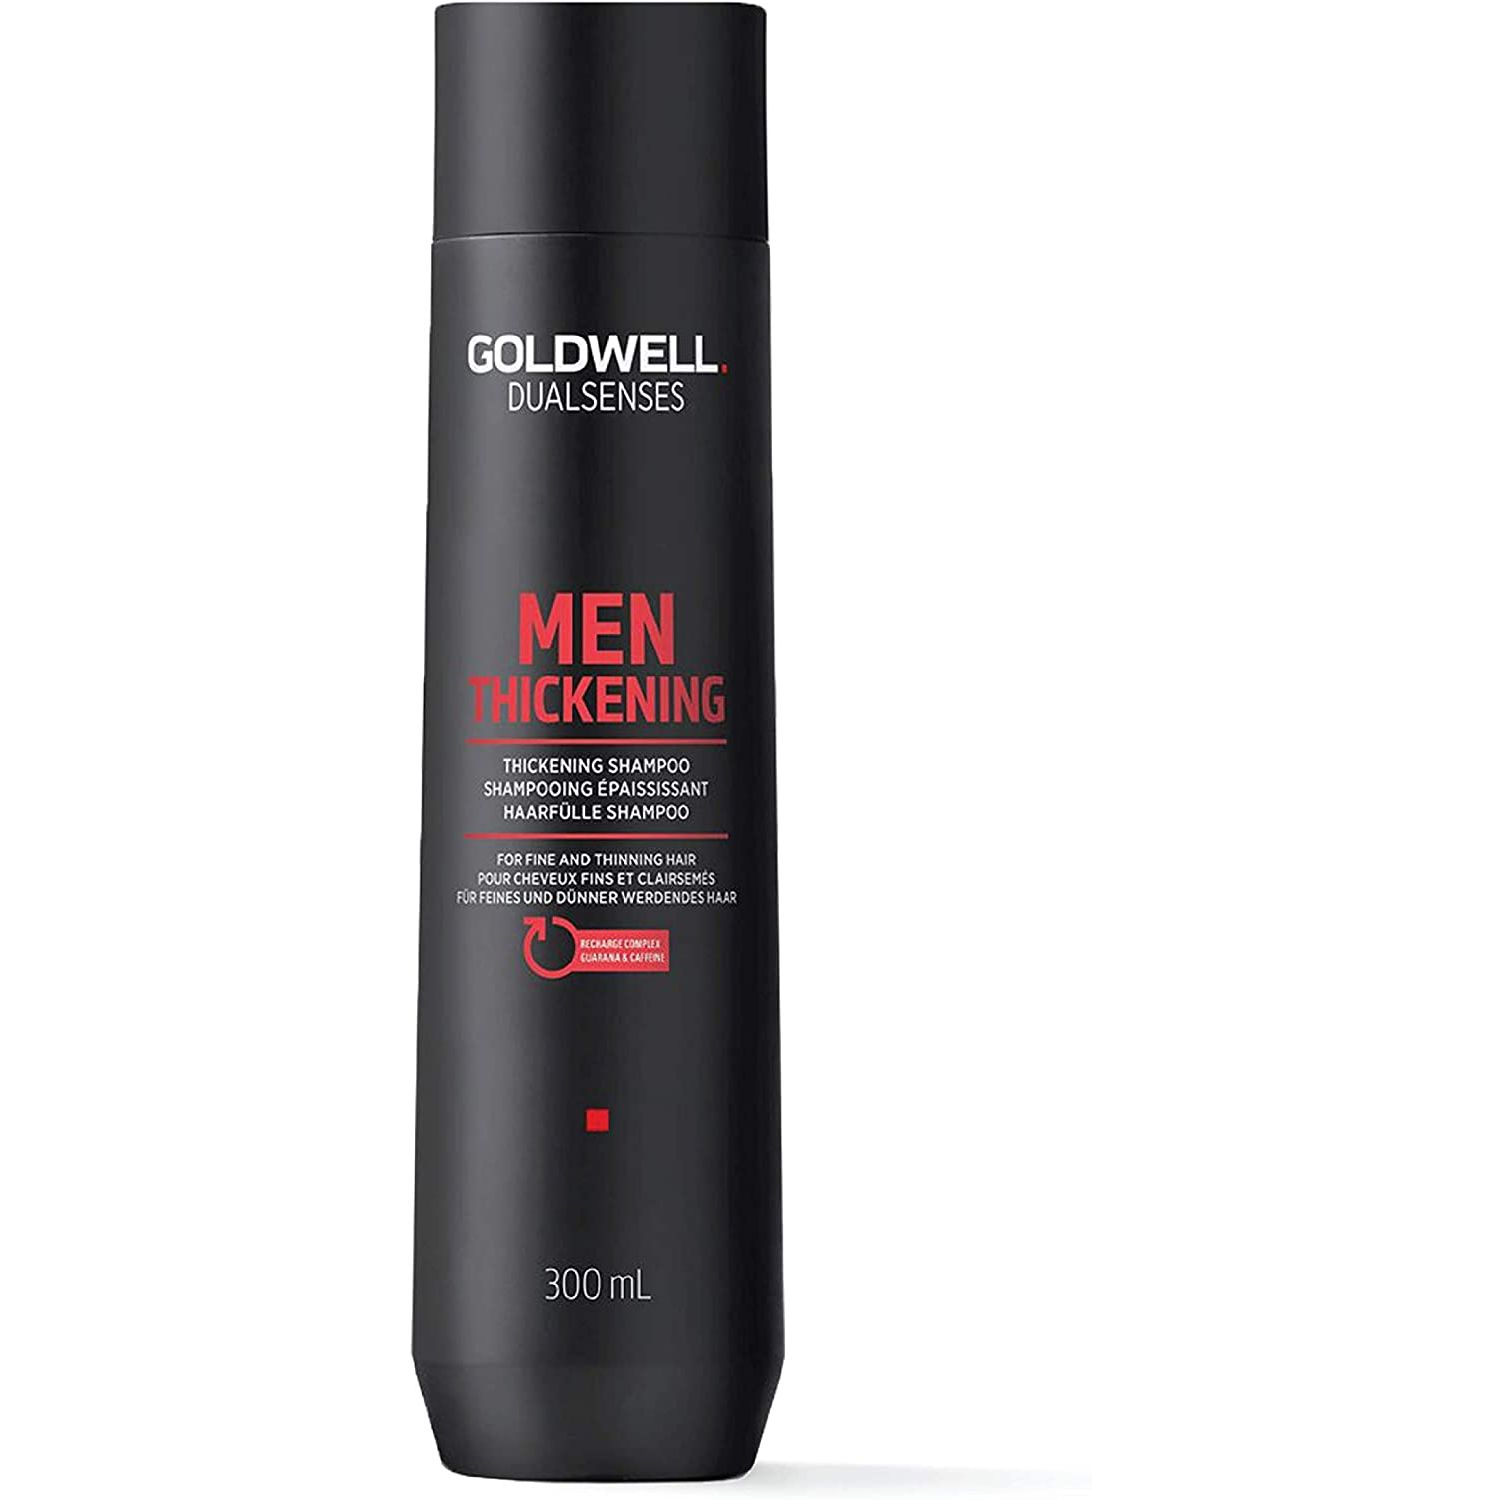 Укрепляющий шампунь для волос Goldwell 300 мл - купить в Космопрофи, цена на Мегамаркет